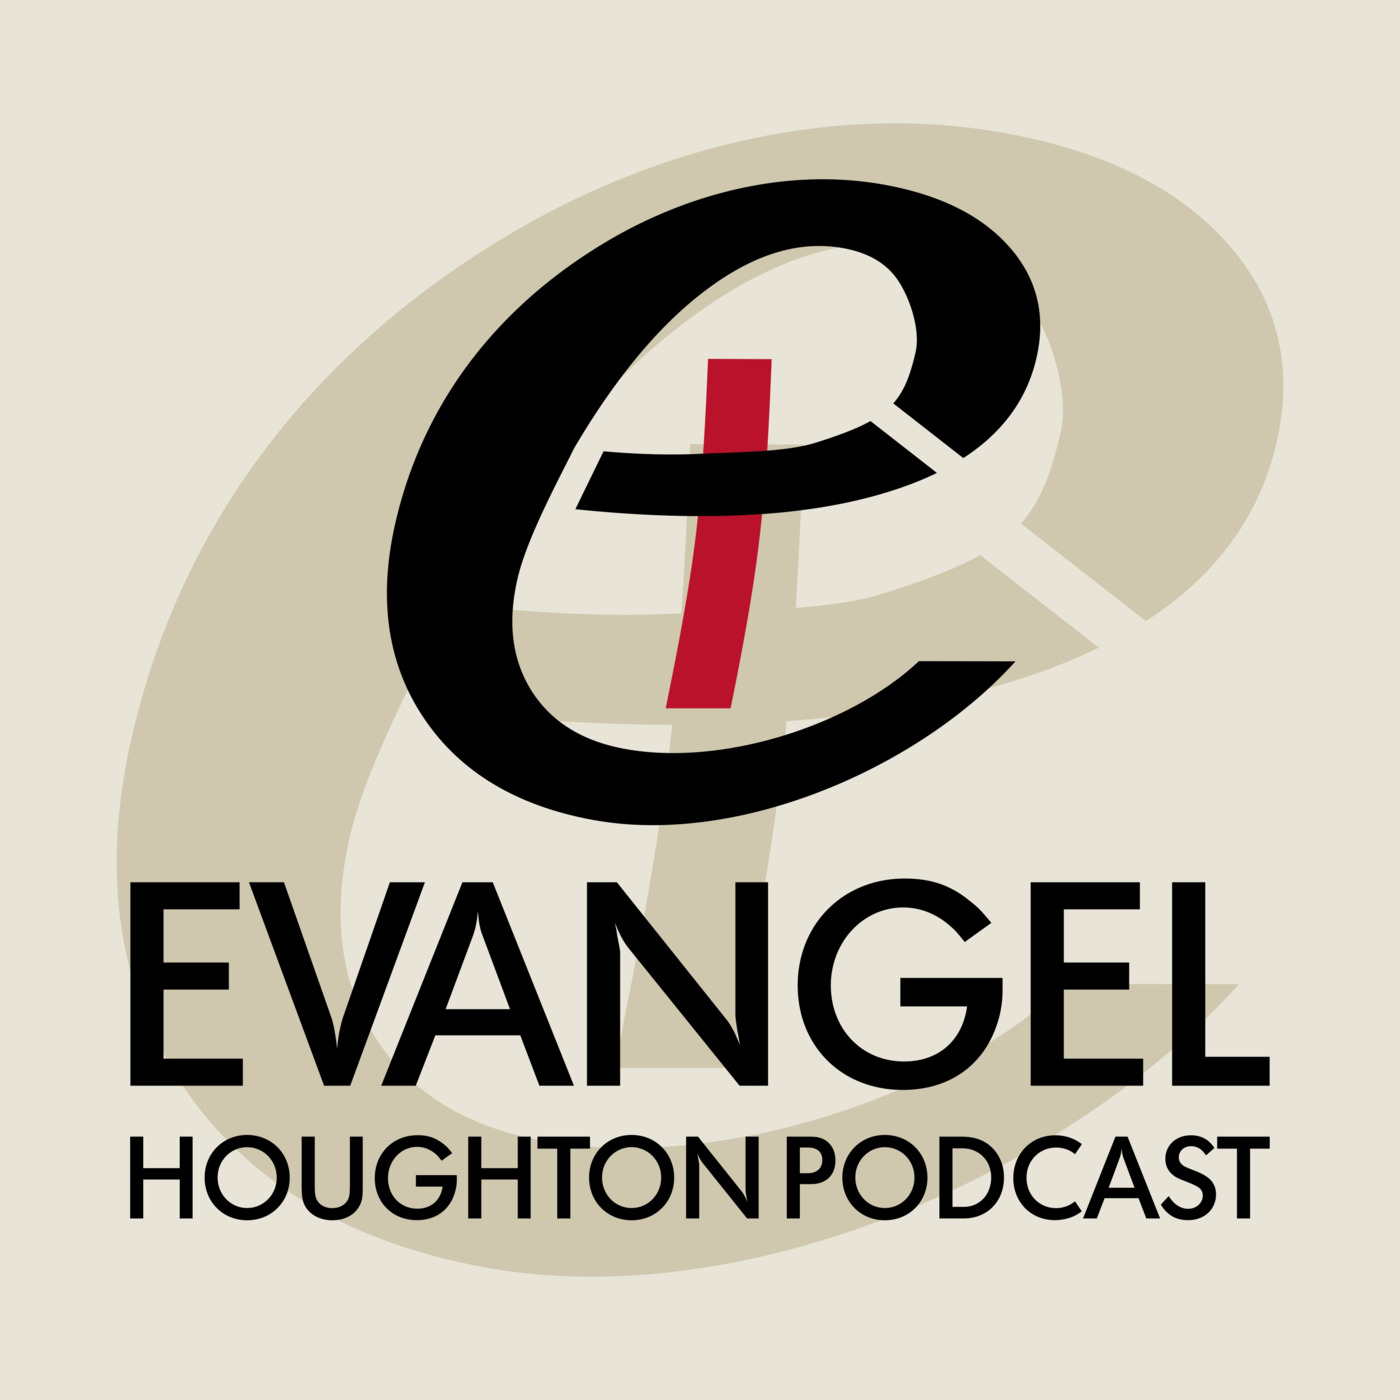 Evangel Houghton